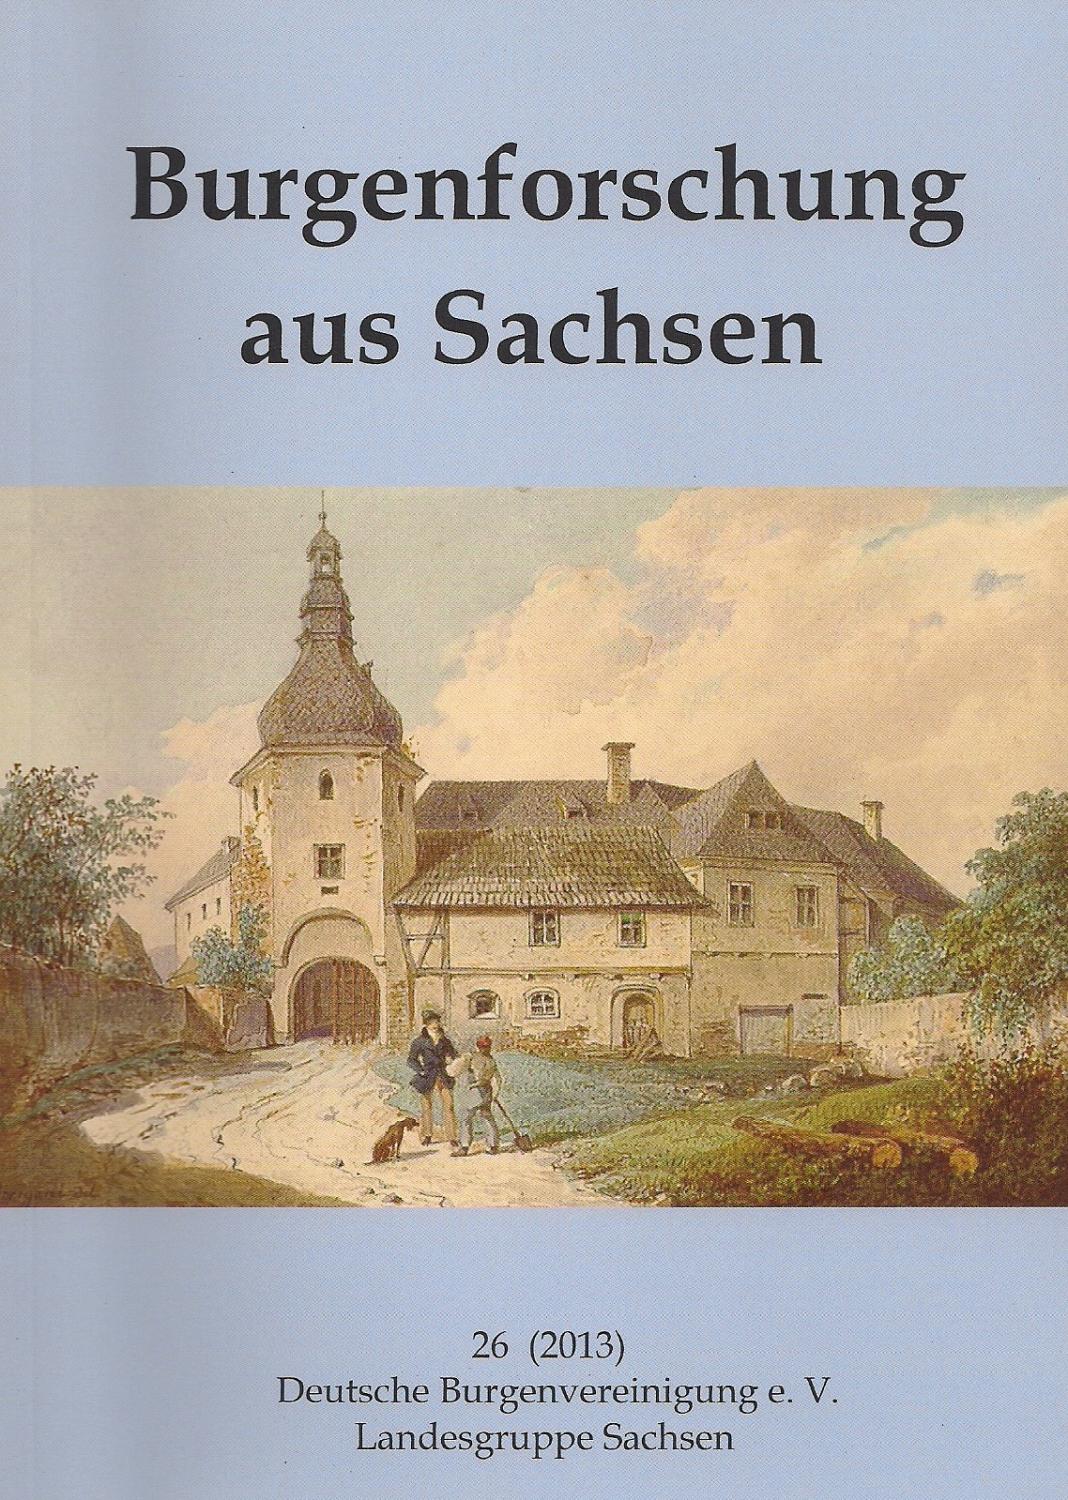 Burgenforschung aus Sachsen 26 (2013) - Herausgegeben von Ingolf Gräßler im Auftrag der Landesgruppe Sachsen der DBV e. V.